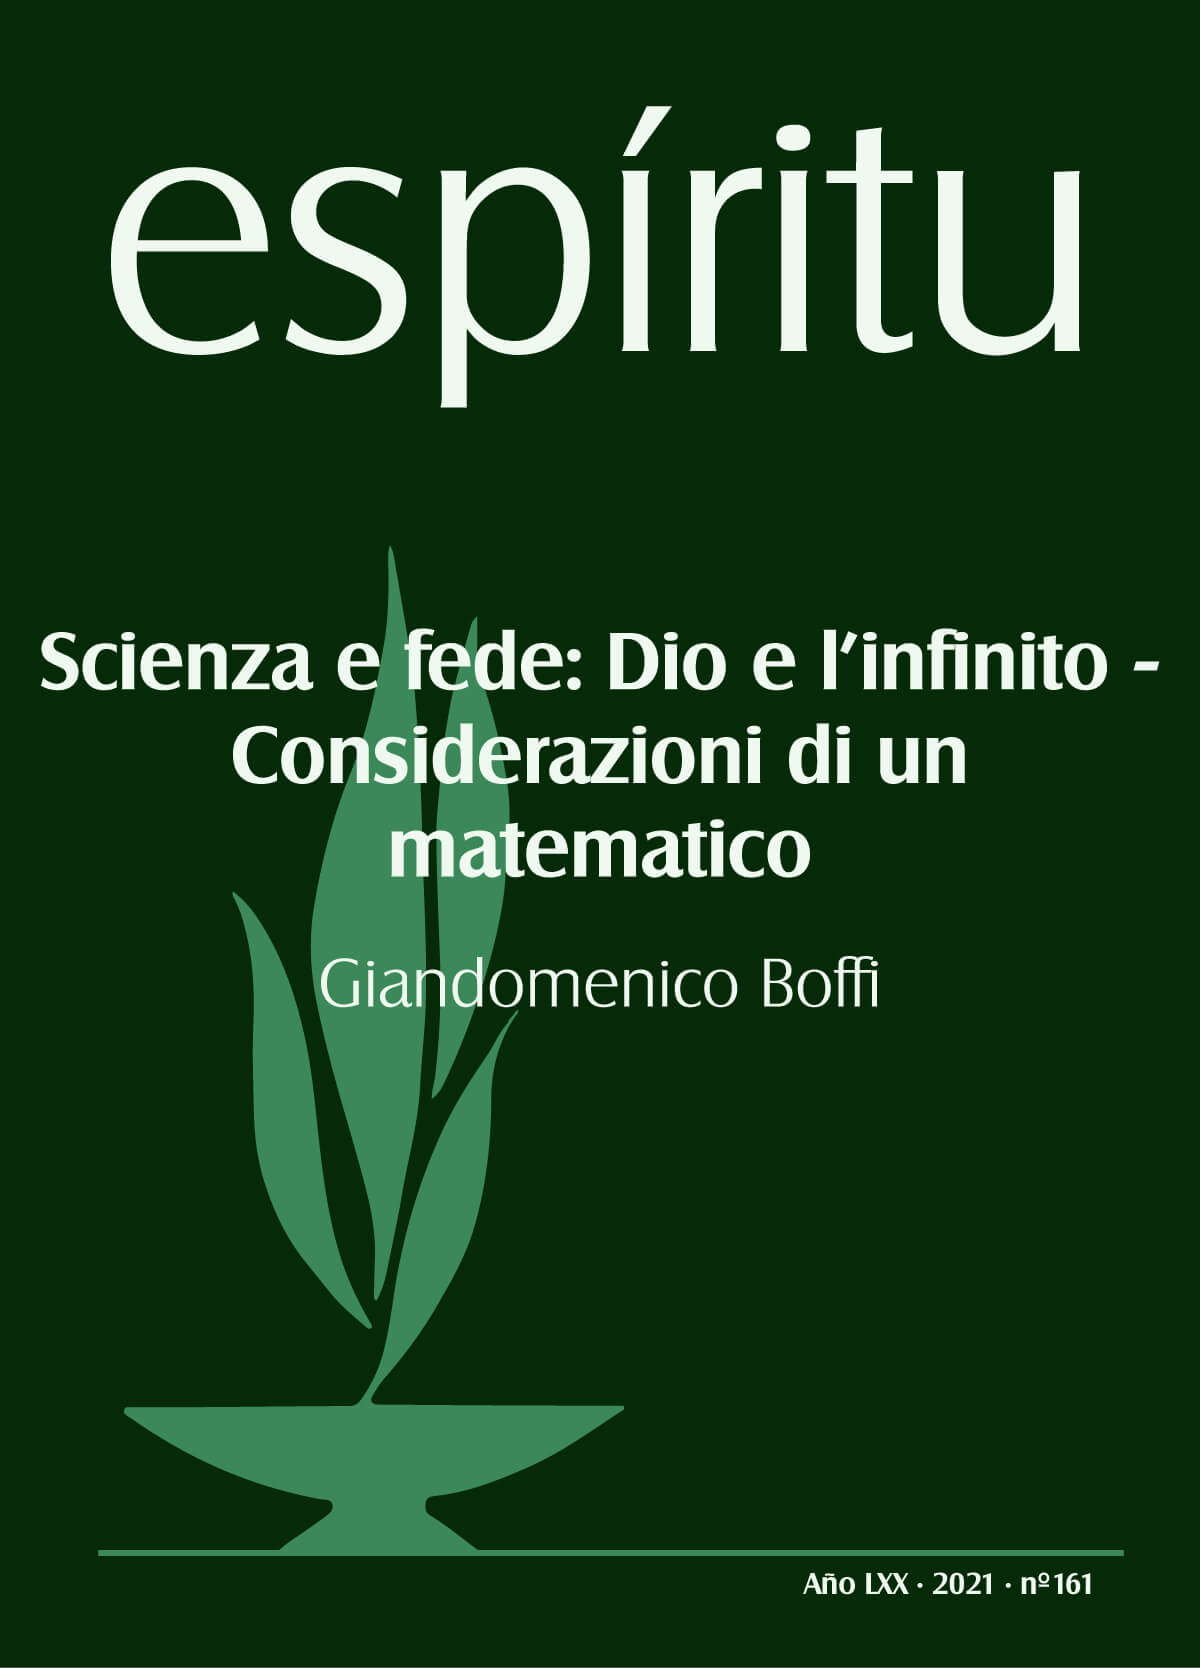 Scienza e fede: Dio e l’infinito –Considerazioni di un matematico